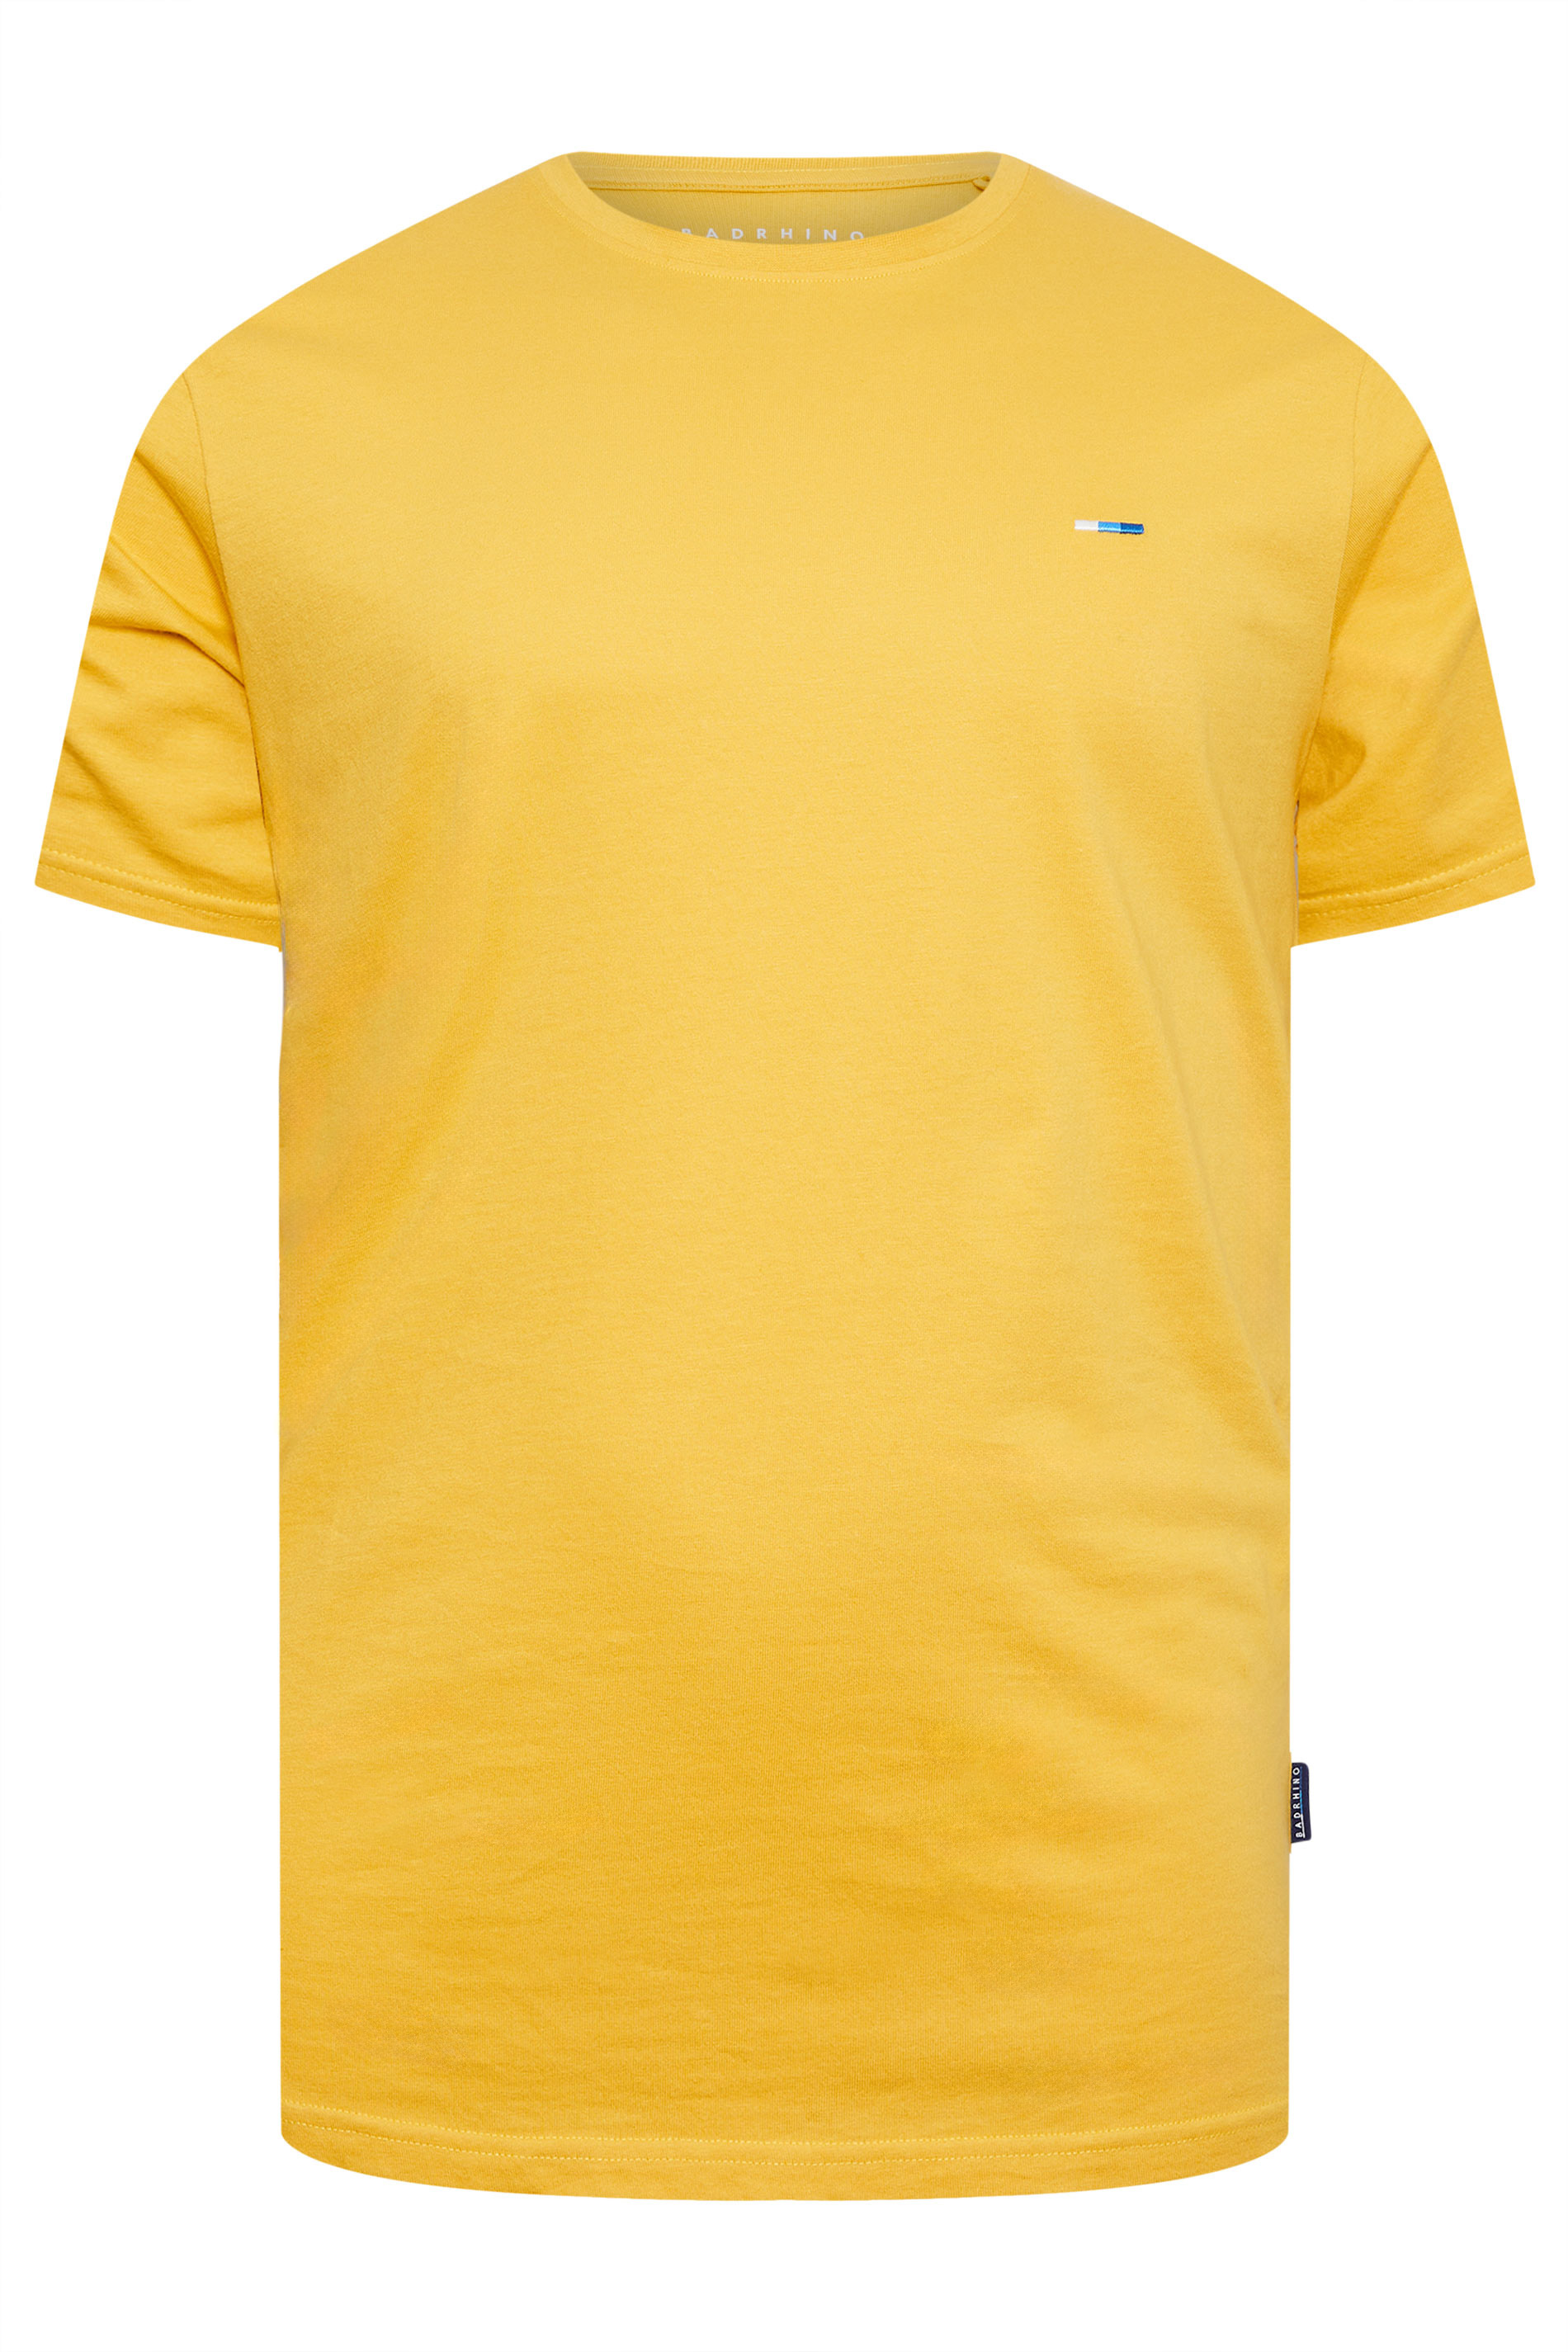 BadRhino Big & Tall Mustard Yellow Core T-Shirt | BadRhino